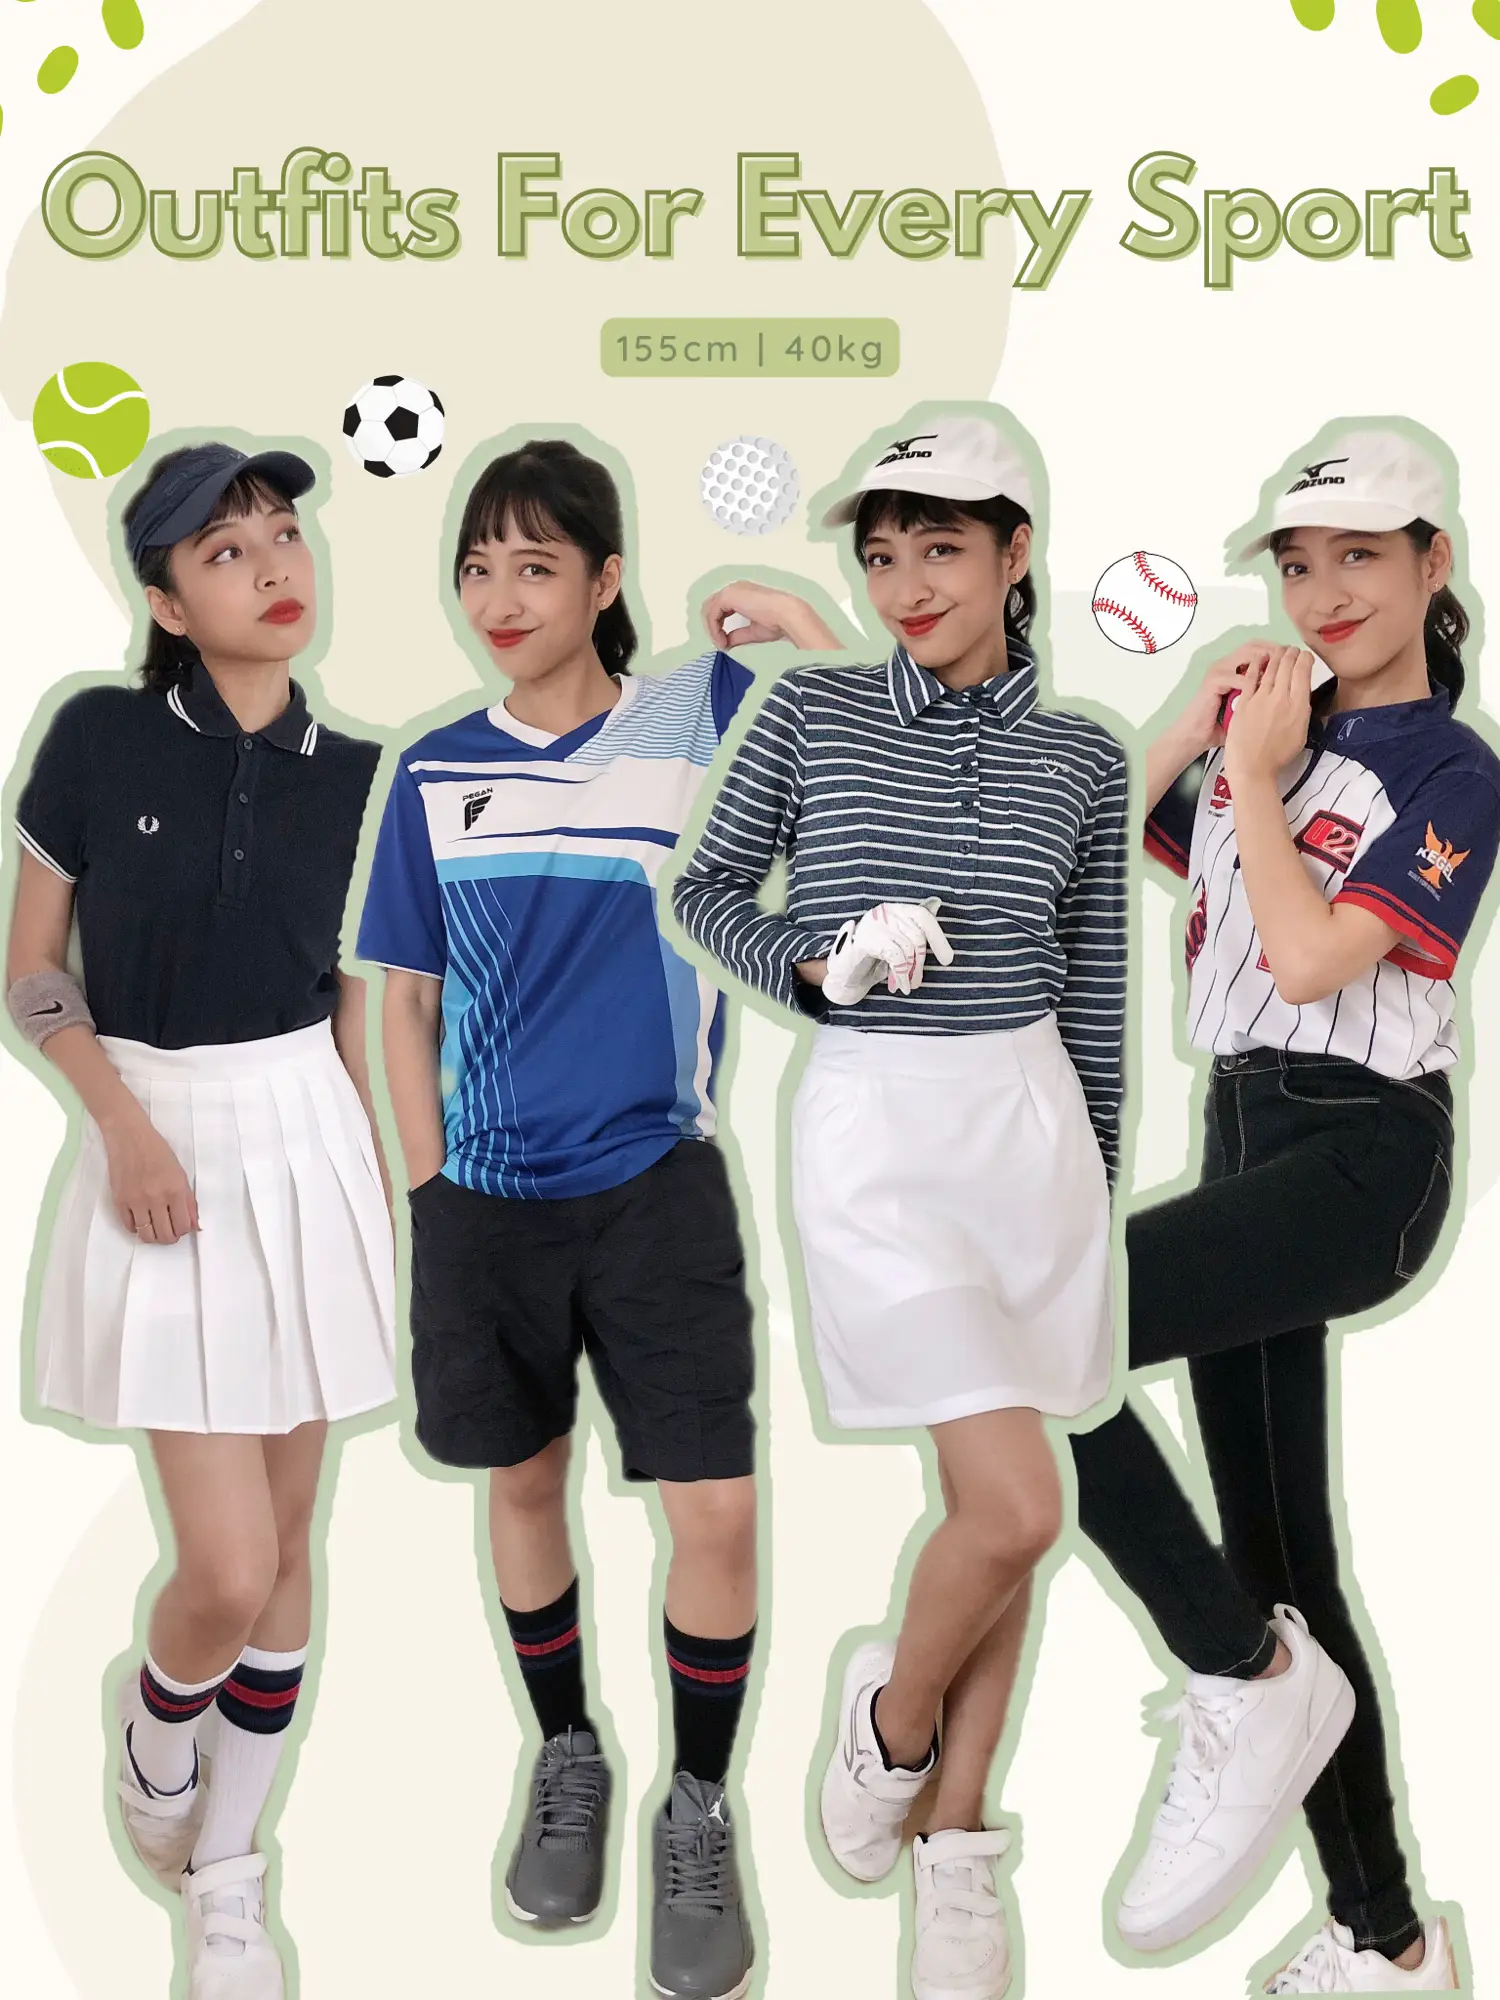 4 sporty outfit ideas, Galeri disiarkan oleh Zureen